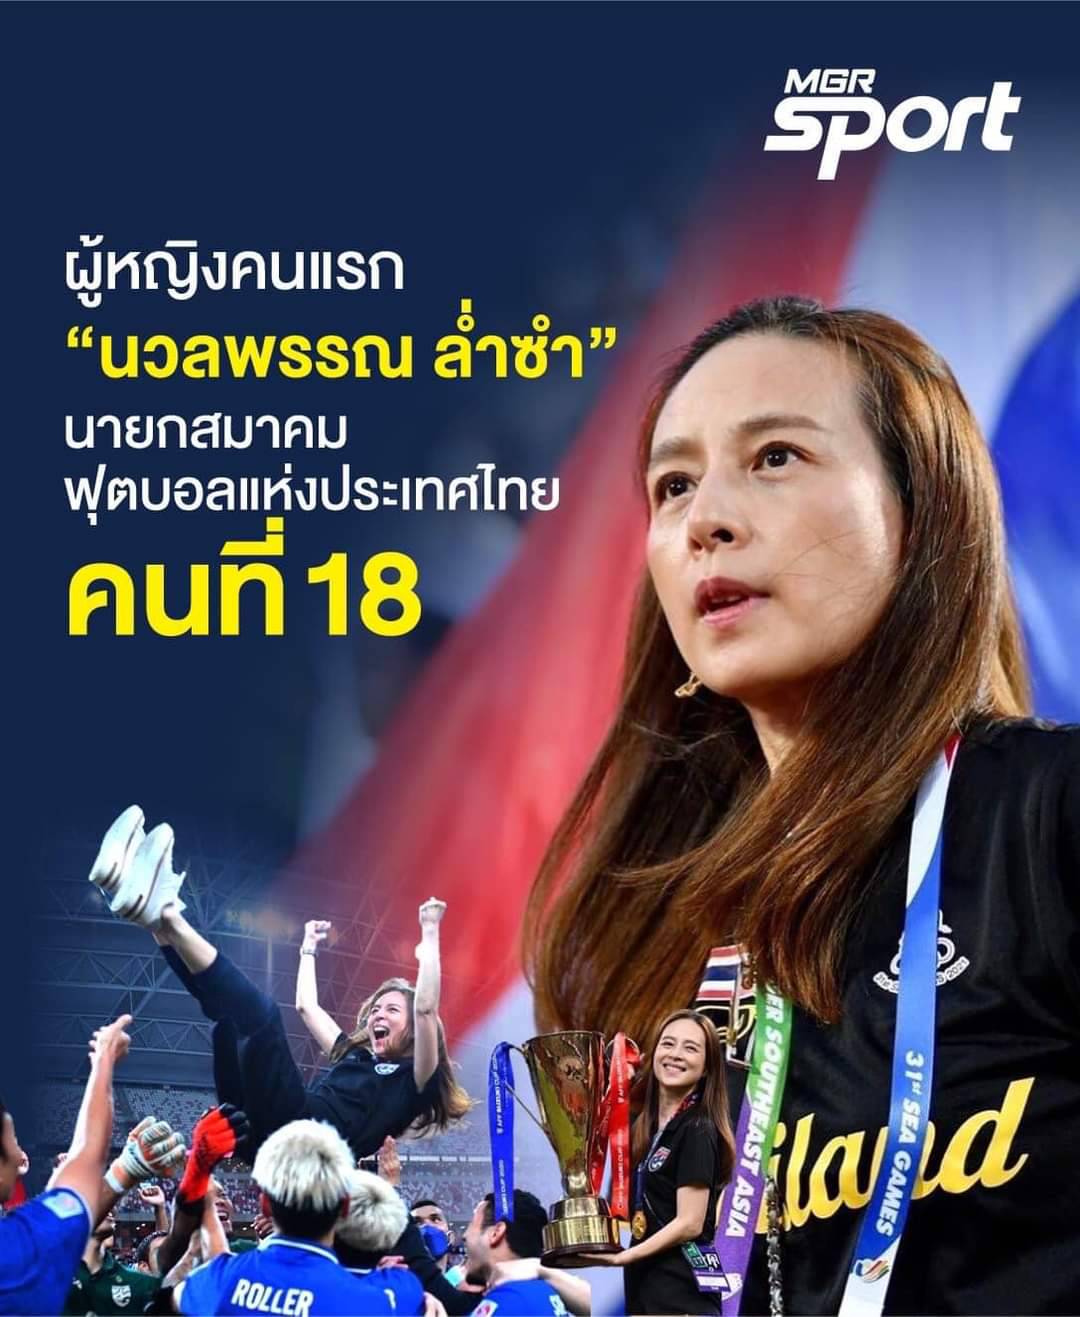 "มาดามแป้ง" ผงาด นั่งนายกสมาคมกีฬาฟุตบอลแห่งประเทศไทยฯ ถือเป็นประวัติศาสตร์ฟุตบอลเอเชียที่มีสุภาพสตรีเป็นนายกสมาคมฟุตบอลฯคนแรก หลังได้คะแนนไว้ใจถล่มทลายถึง93% สูงที่สุดเป็นประวัติการณ์